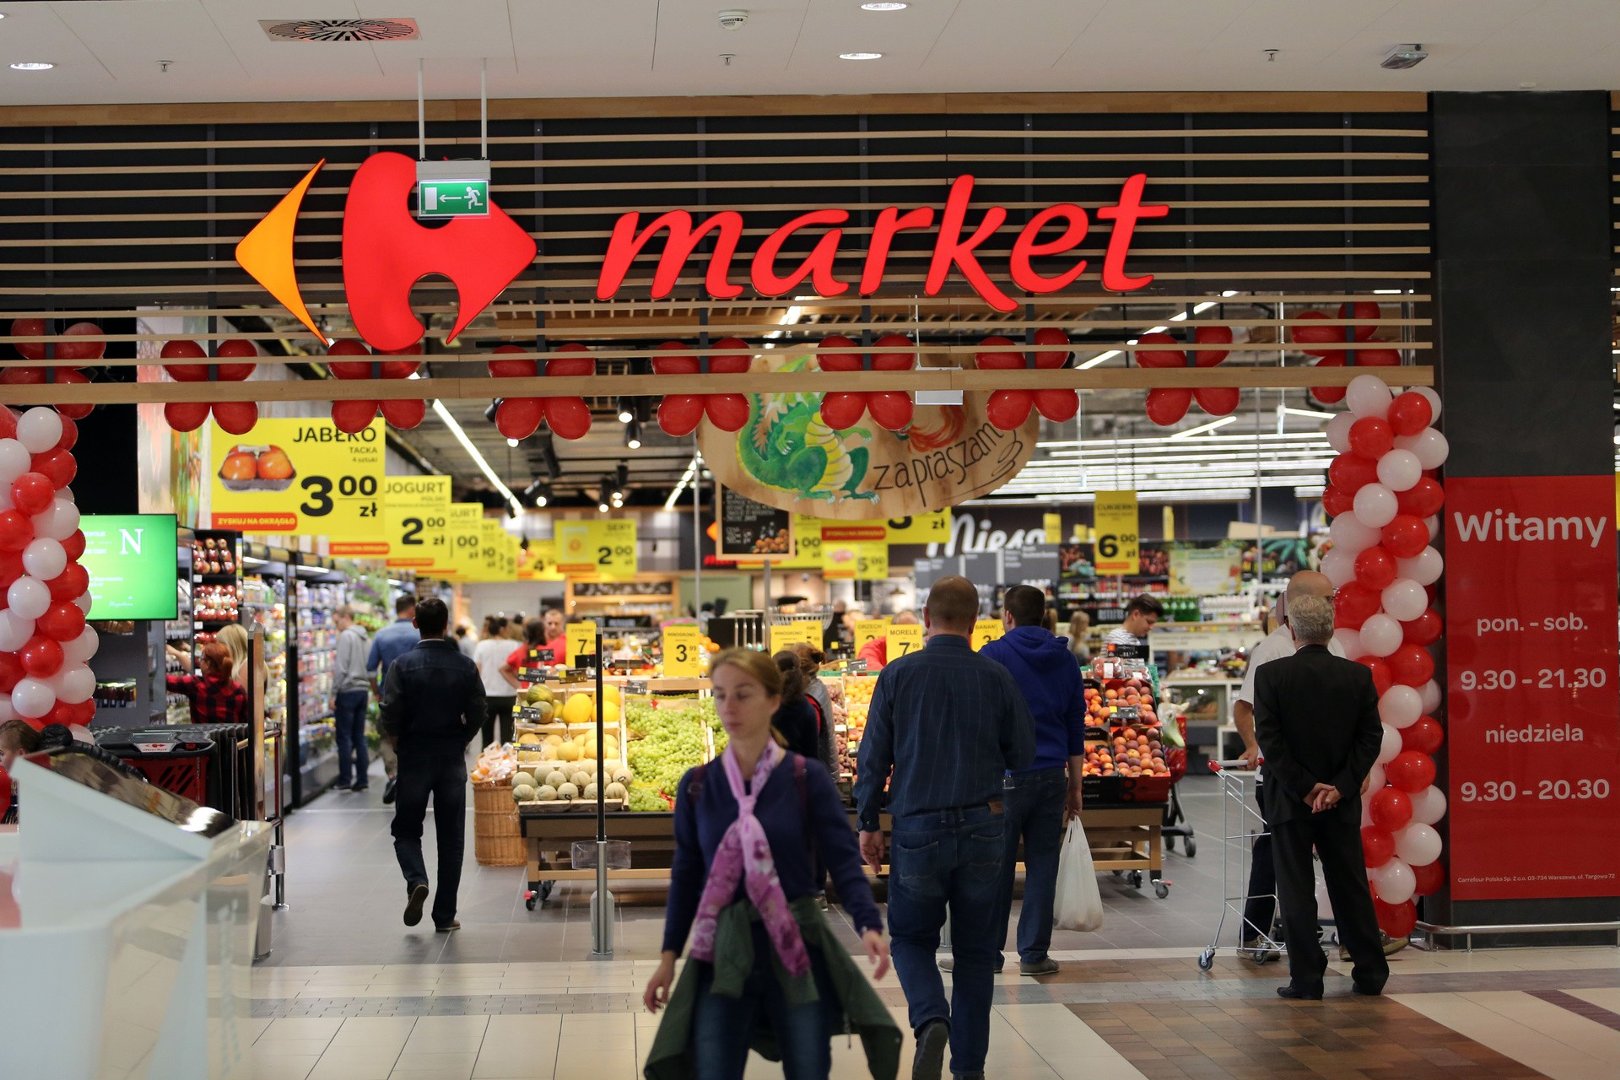 Supermarket Carrefour premium w Galerii Kazimierz otwarty! [ZDJĘCIA] |  Gazeta Krakowska